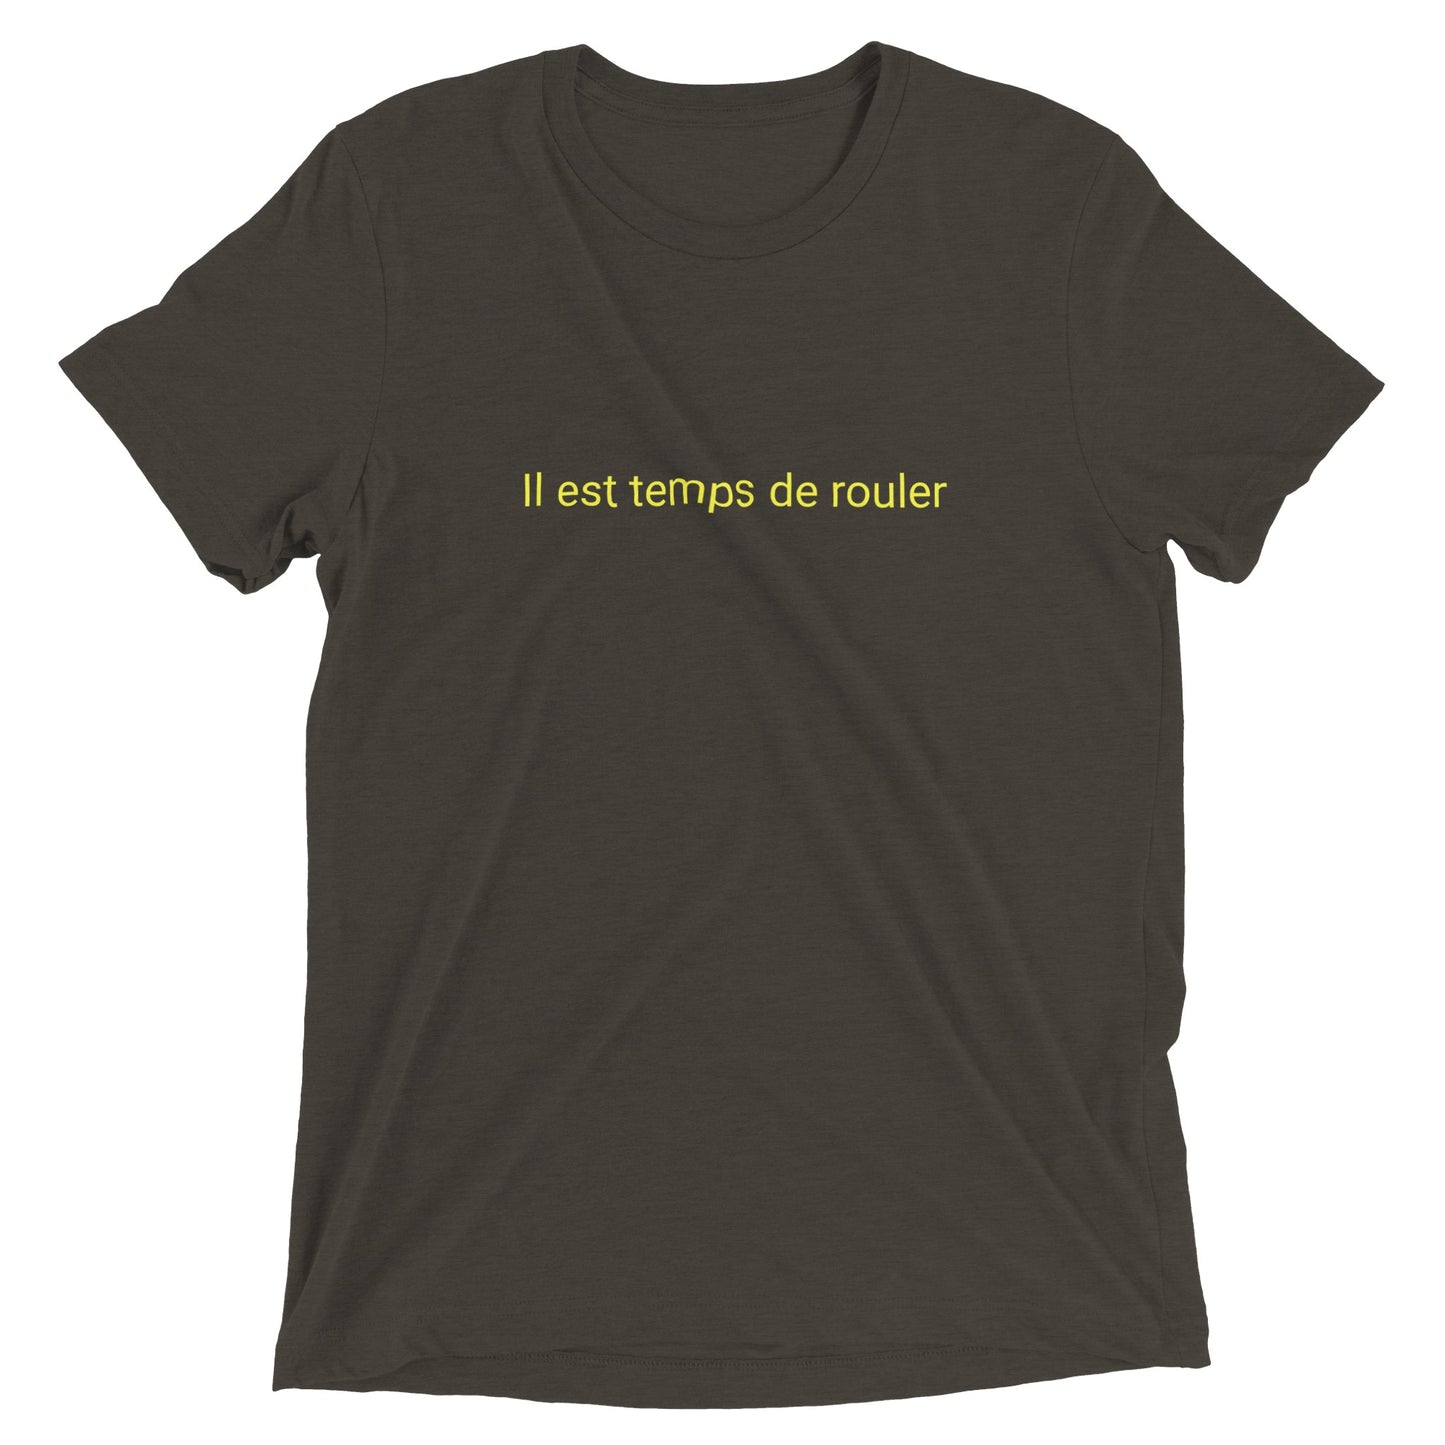 Il est temps de rouler - Camiseta de cuello redondo unisex Triblend